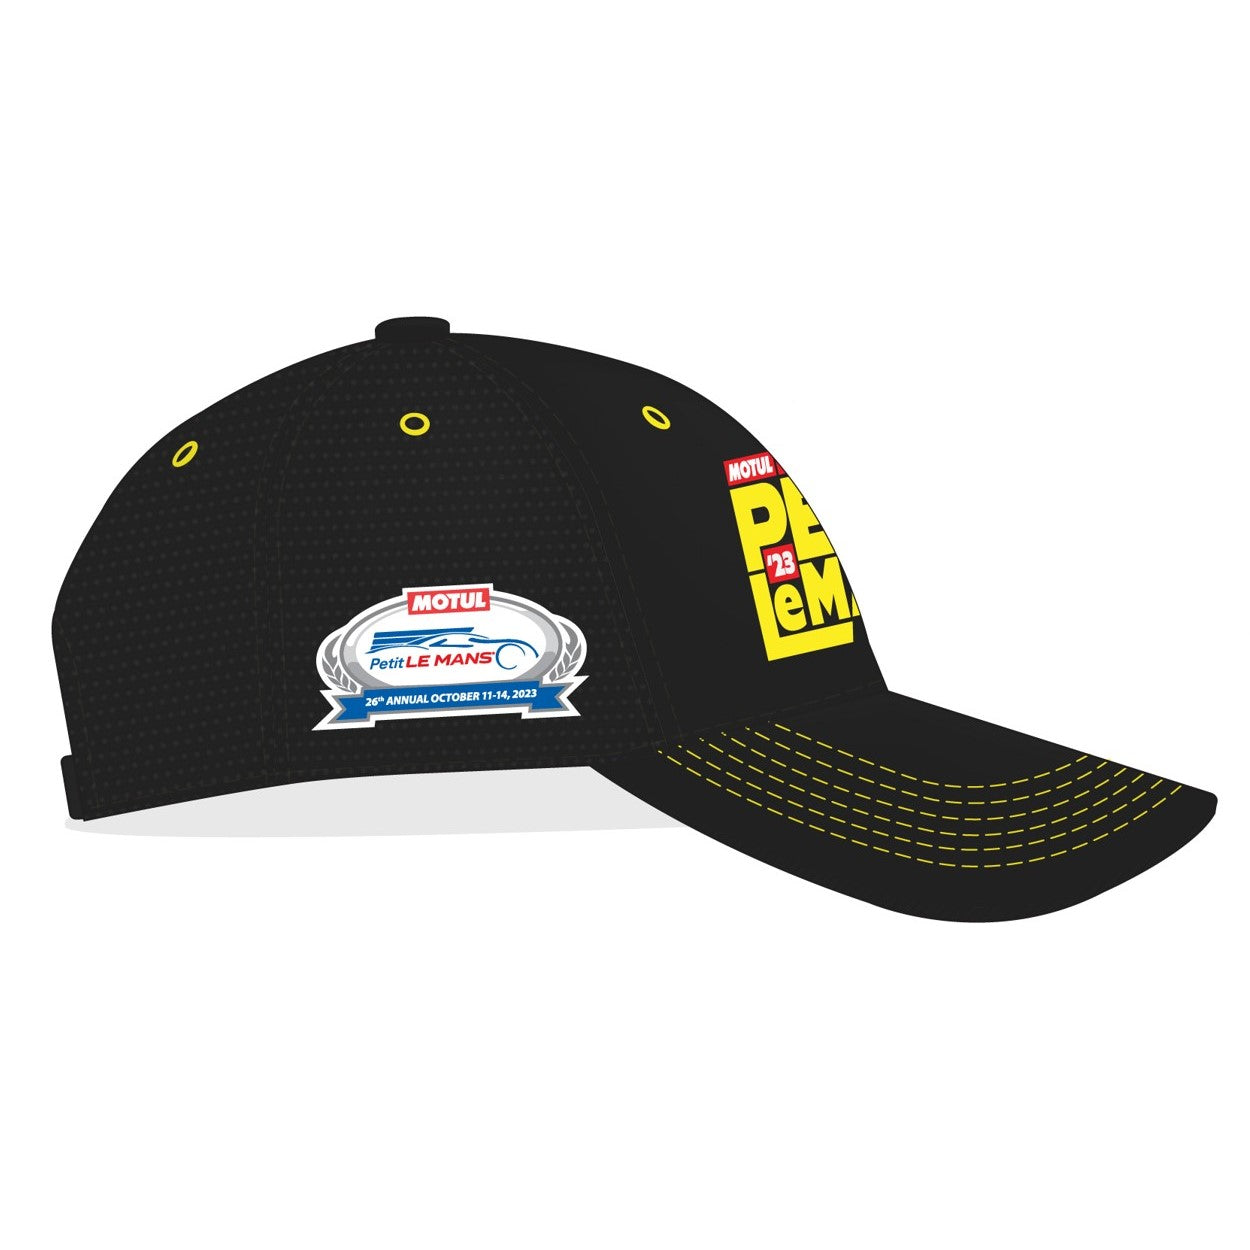 2023 Motul Petit Le Mans Event Hat - Black